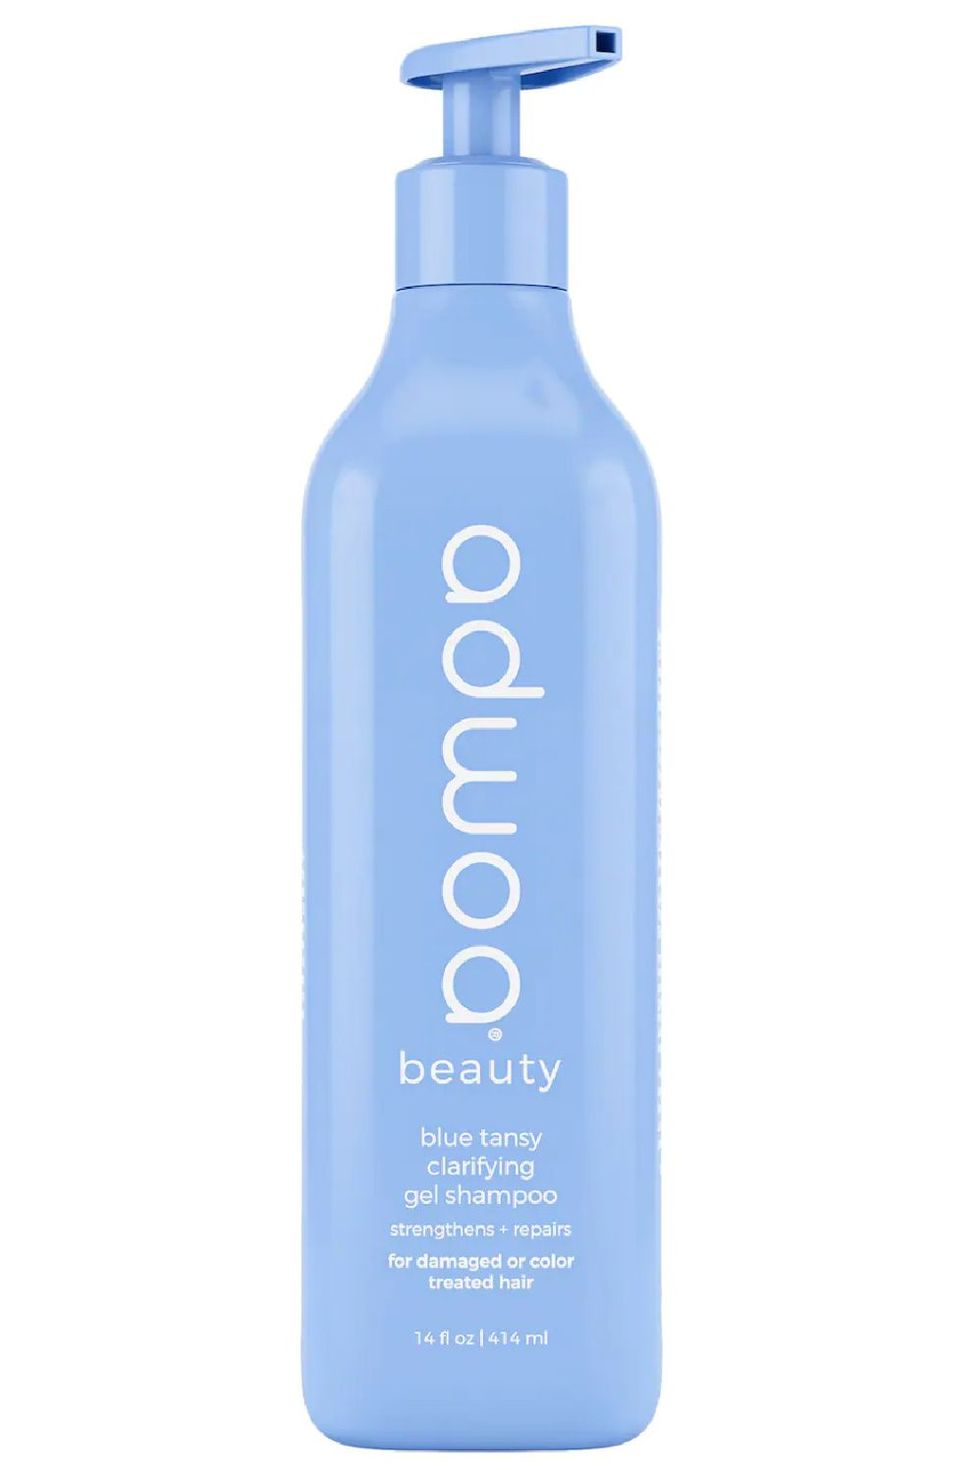 Adwoa Beauty Blue Tansy Clarifying Gel Shampoo